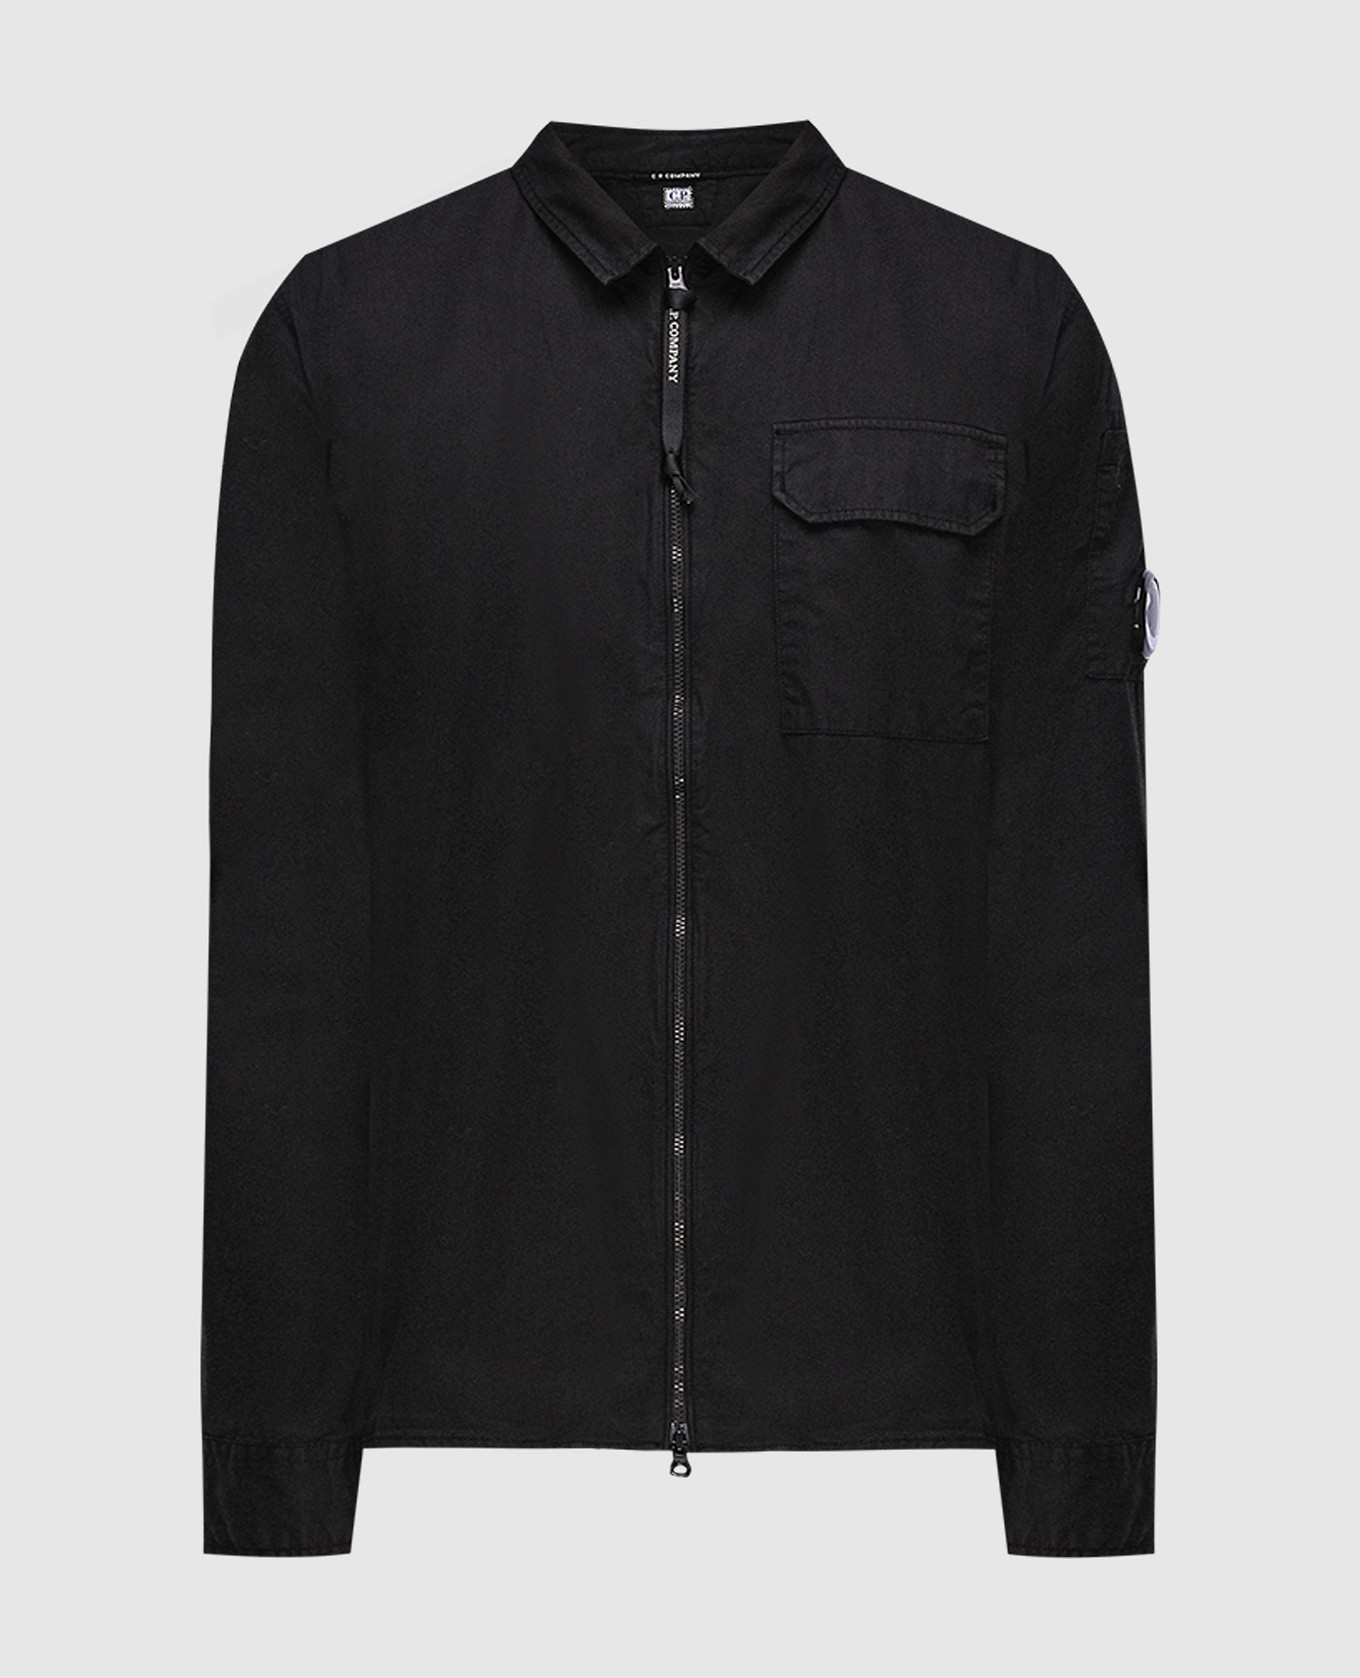 Black shirt with a zipper